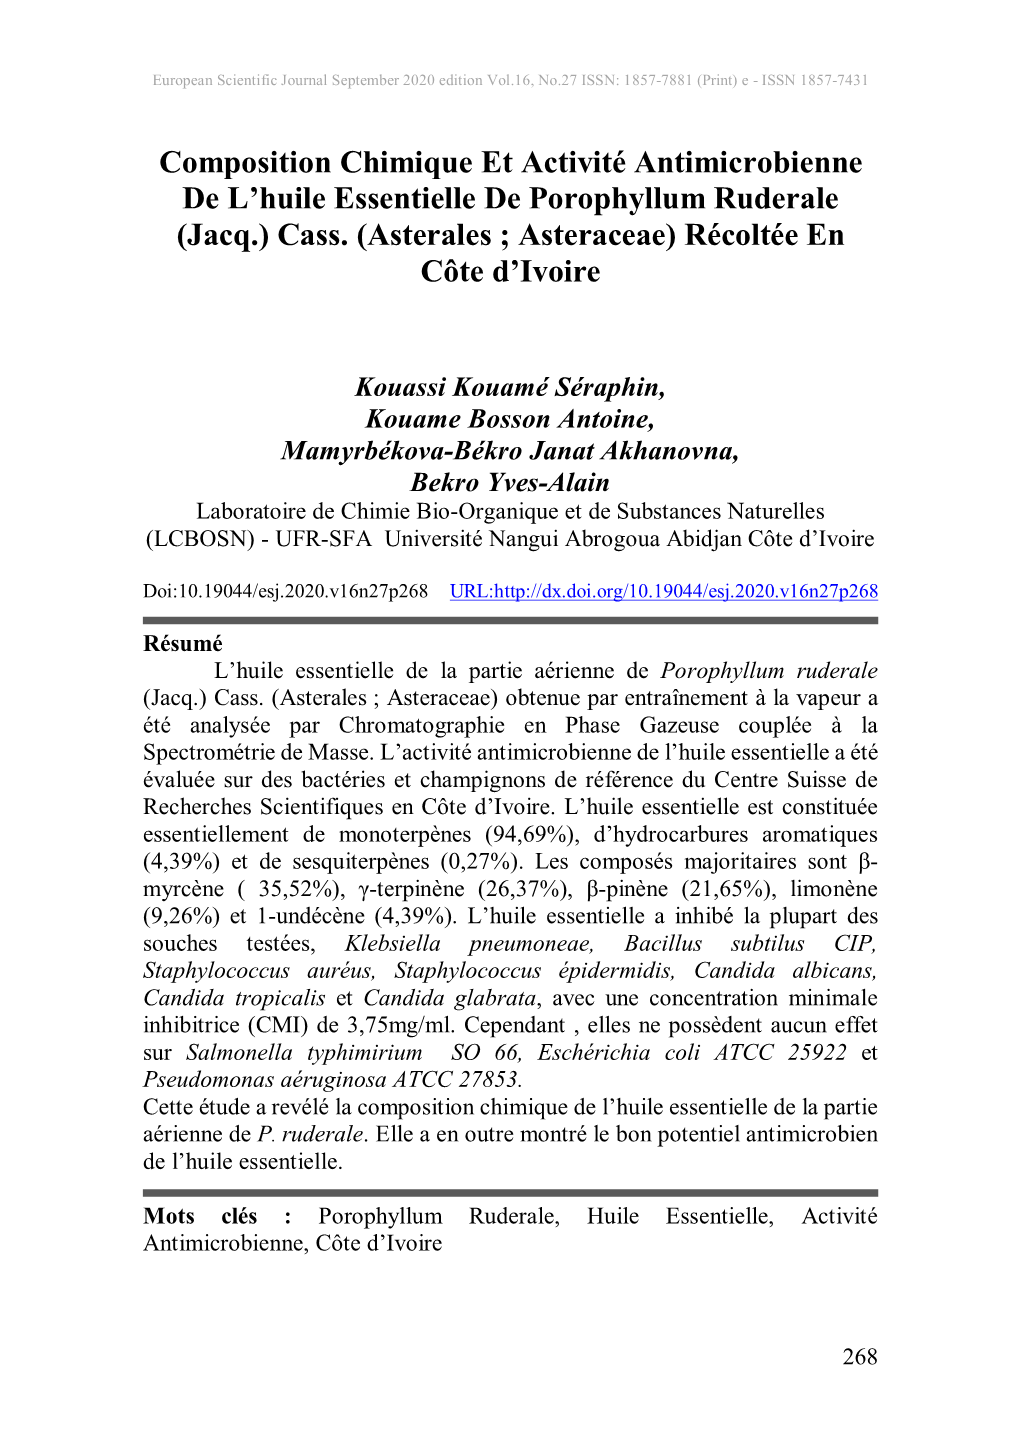 Composition Chimique Et Activité Antimicrobienne De L'huile Essentielle De Porophyllum Ruderale (Jacq.) Cass. (Asterales ; As